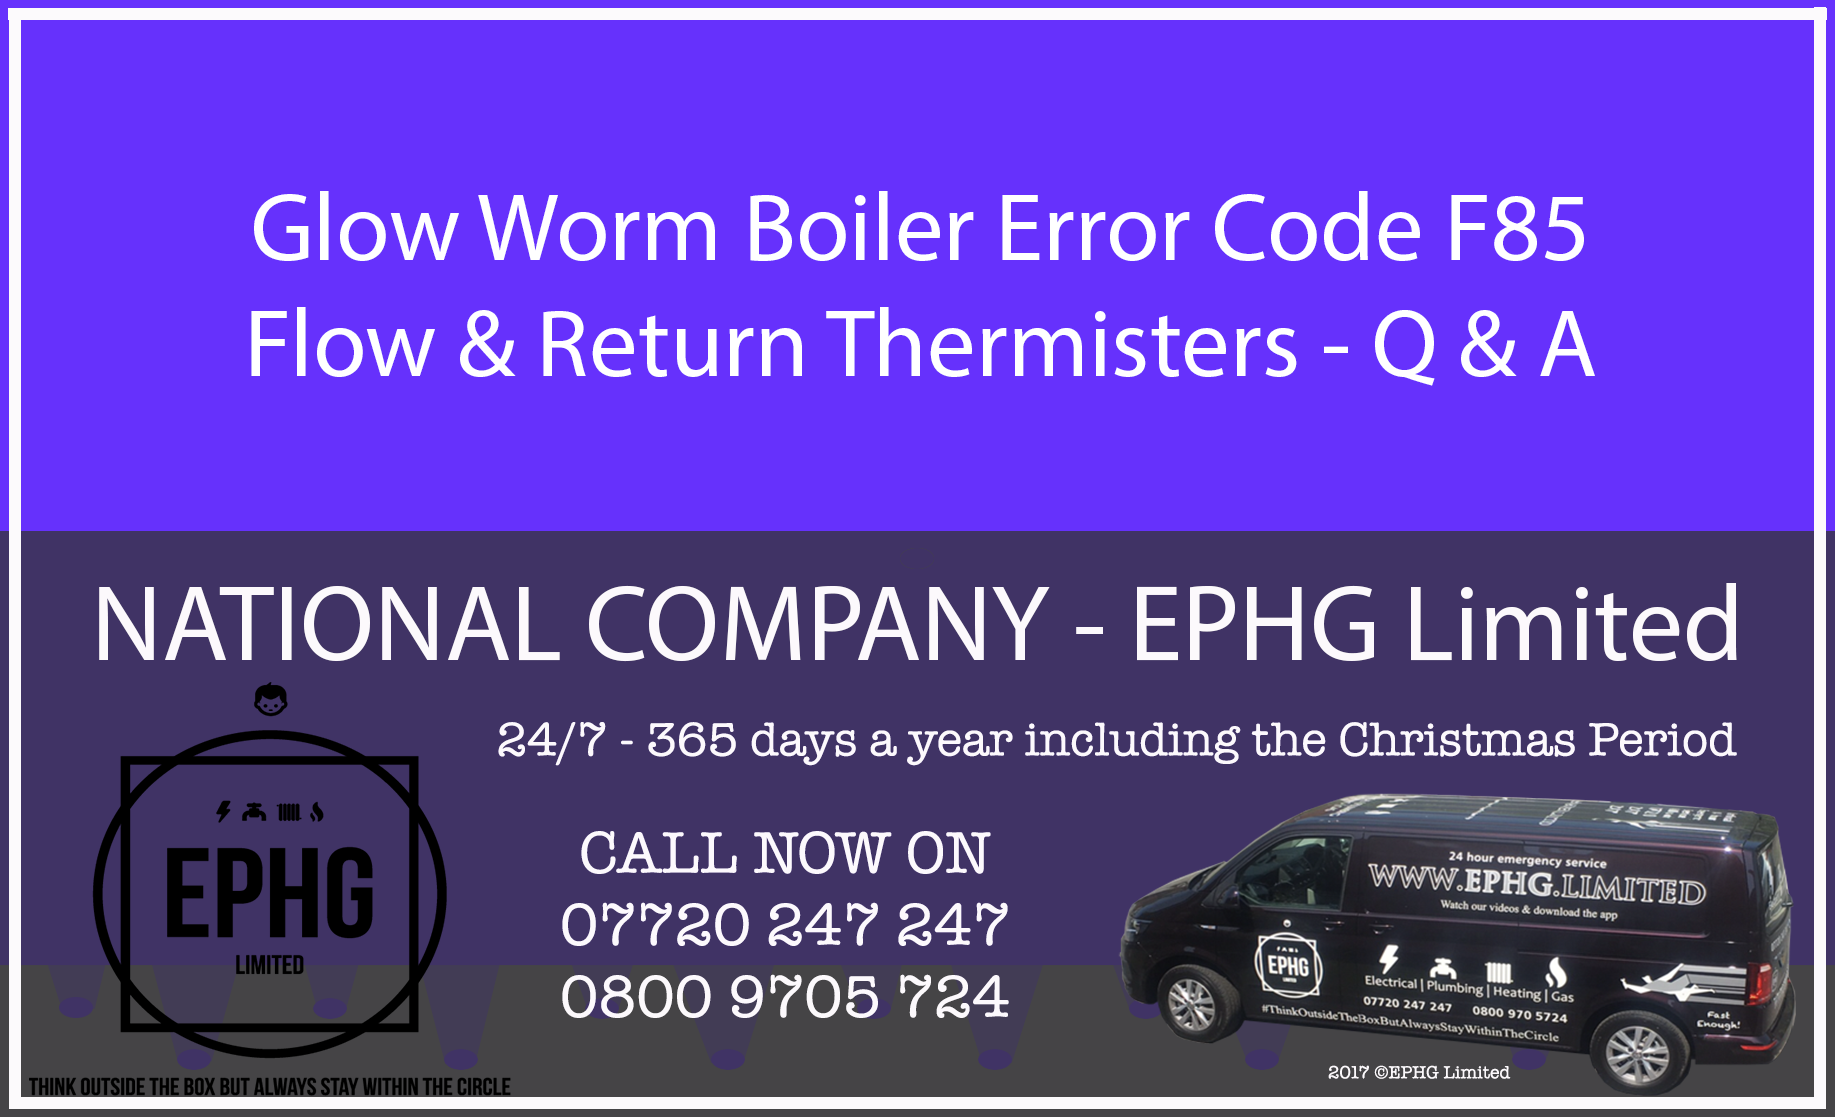 Glow-Worm boiler error code F.85